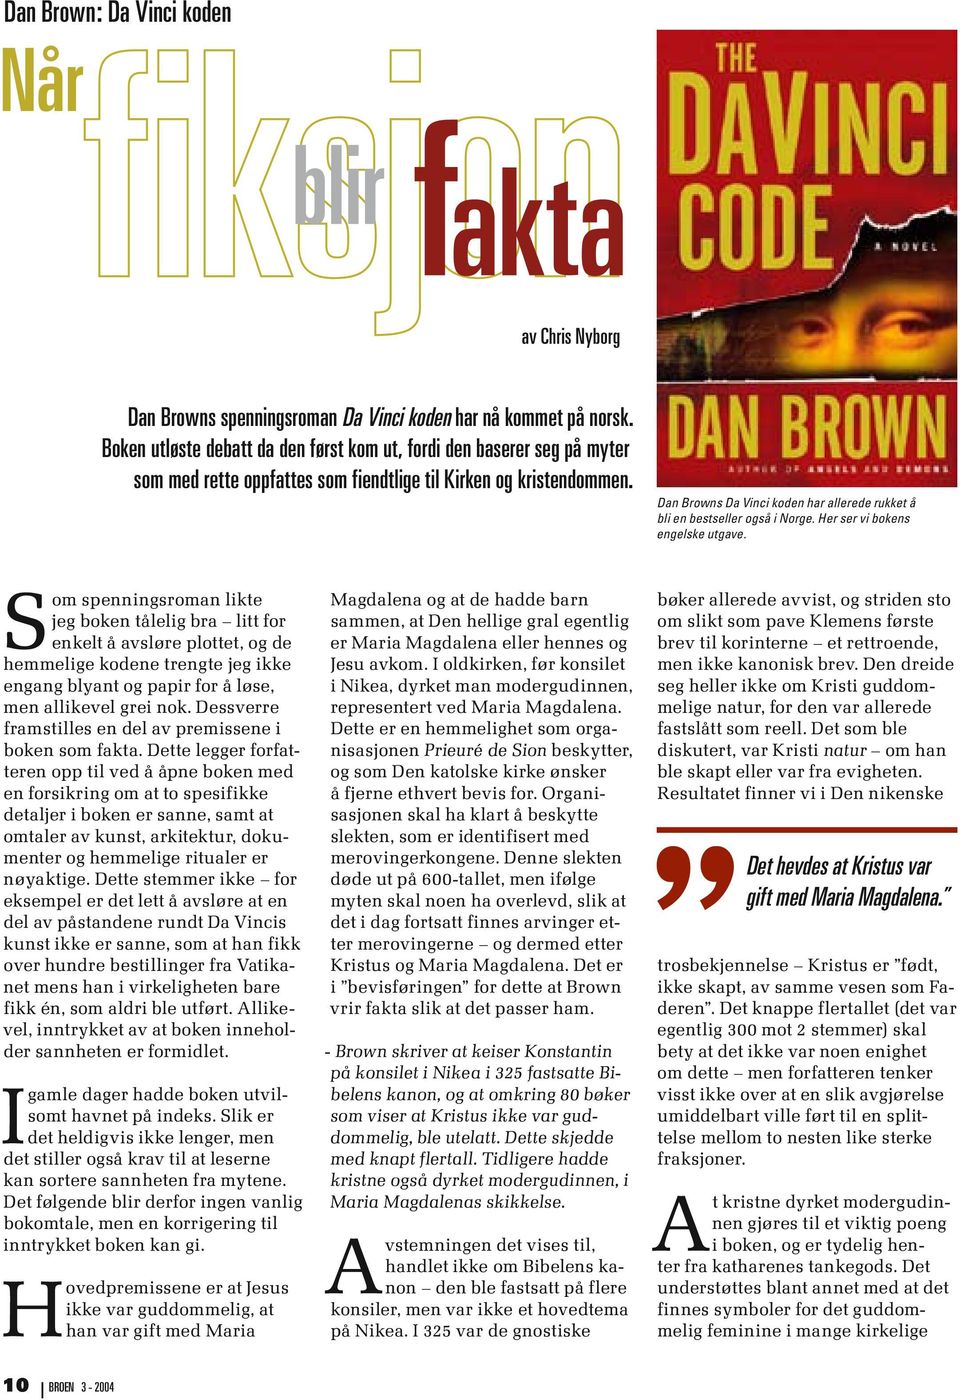 Dan Browns Da Vinci koden har allerede rukket å bli en bestseller også i Norge. Her ser vi bokens engelske utgave.